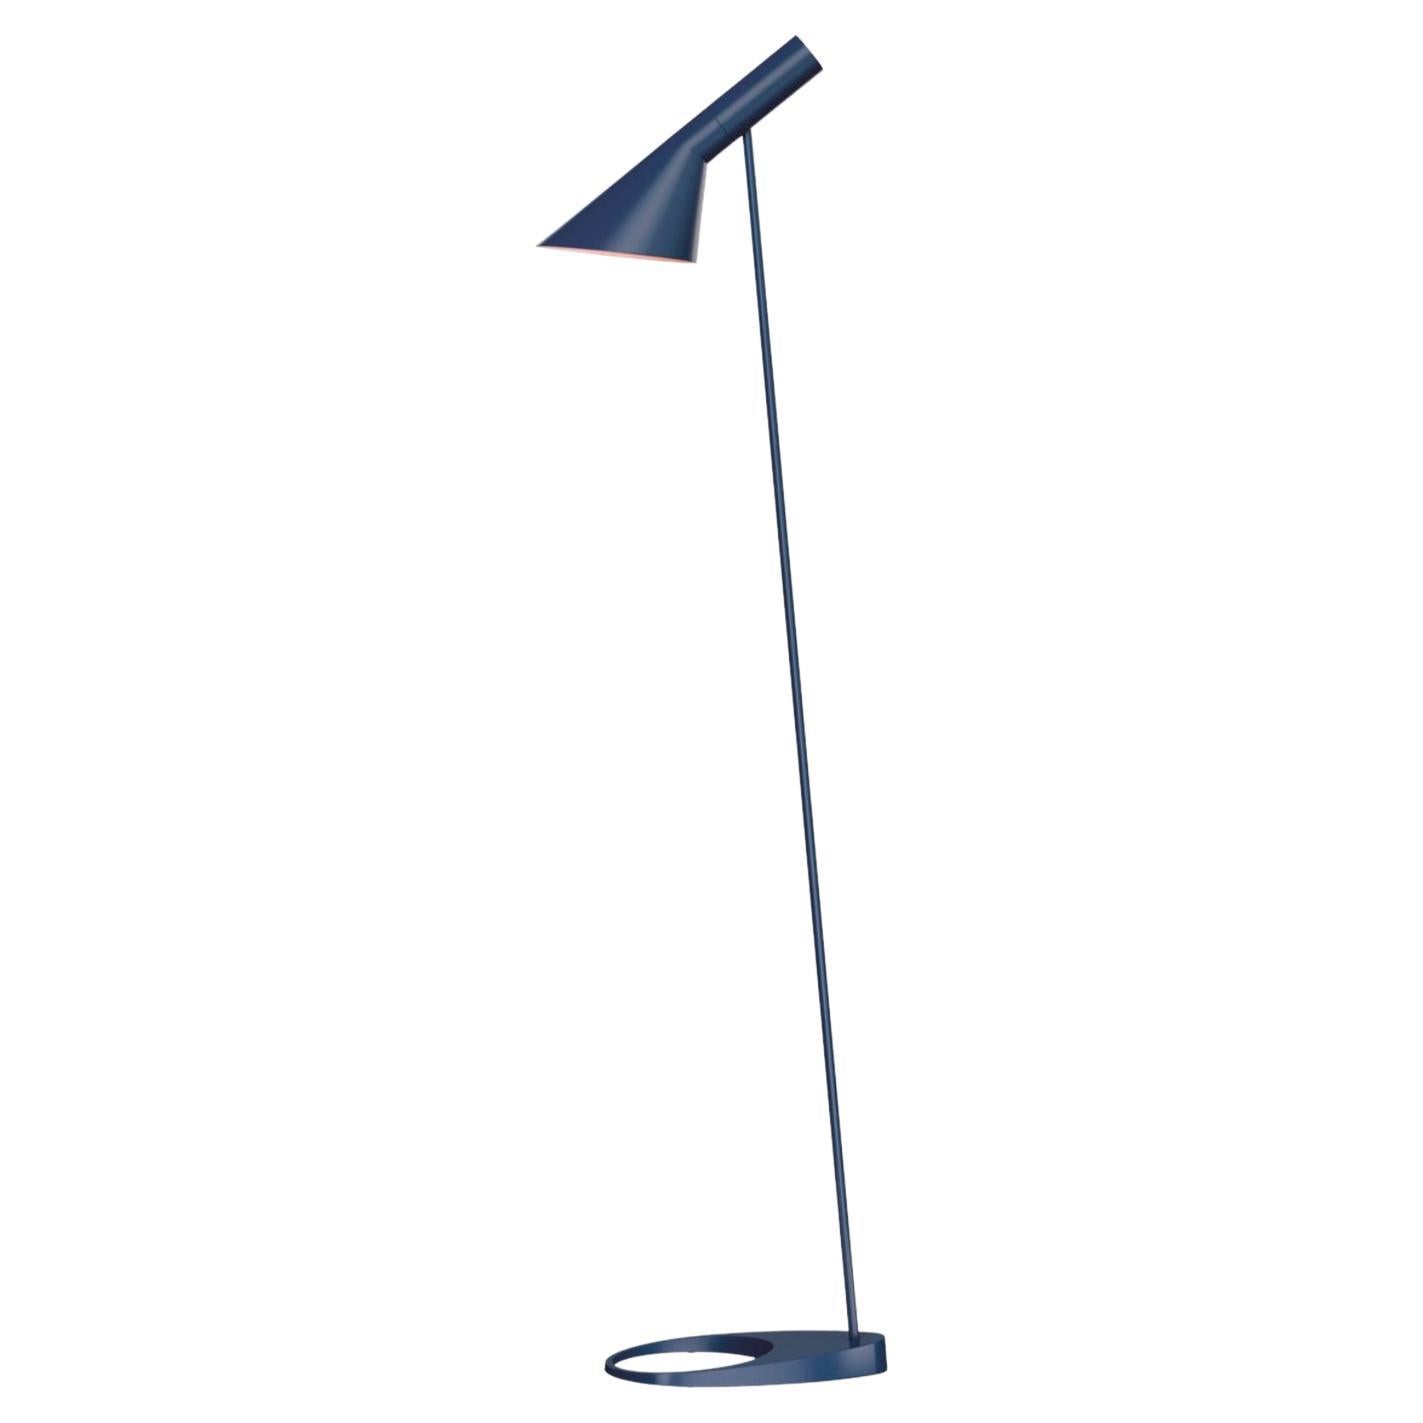 Arne Jacobsen AJ Floor Lamp 1957 in Dark Blue for Louis Poulsen For Sale